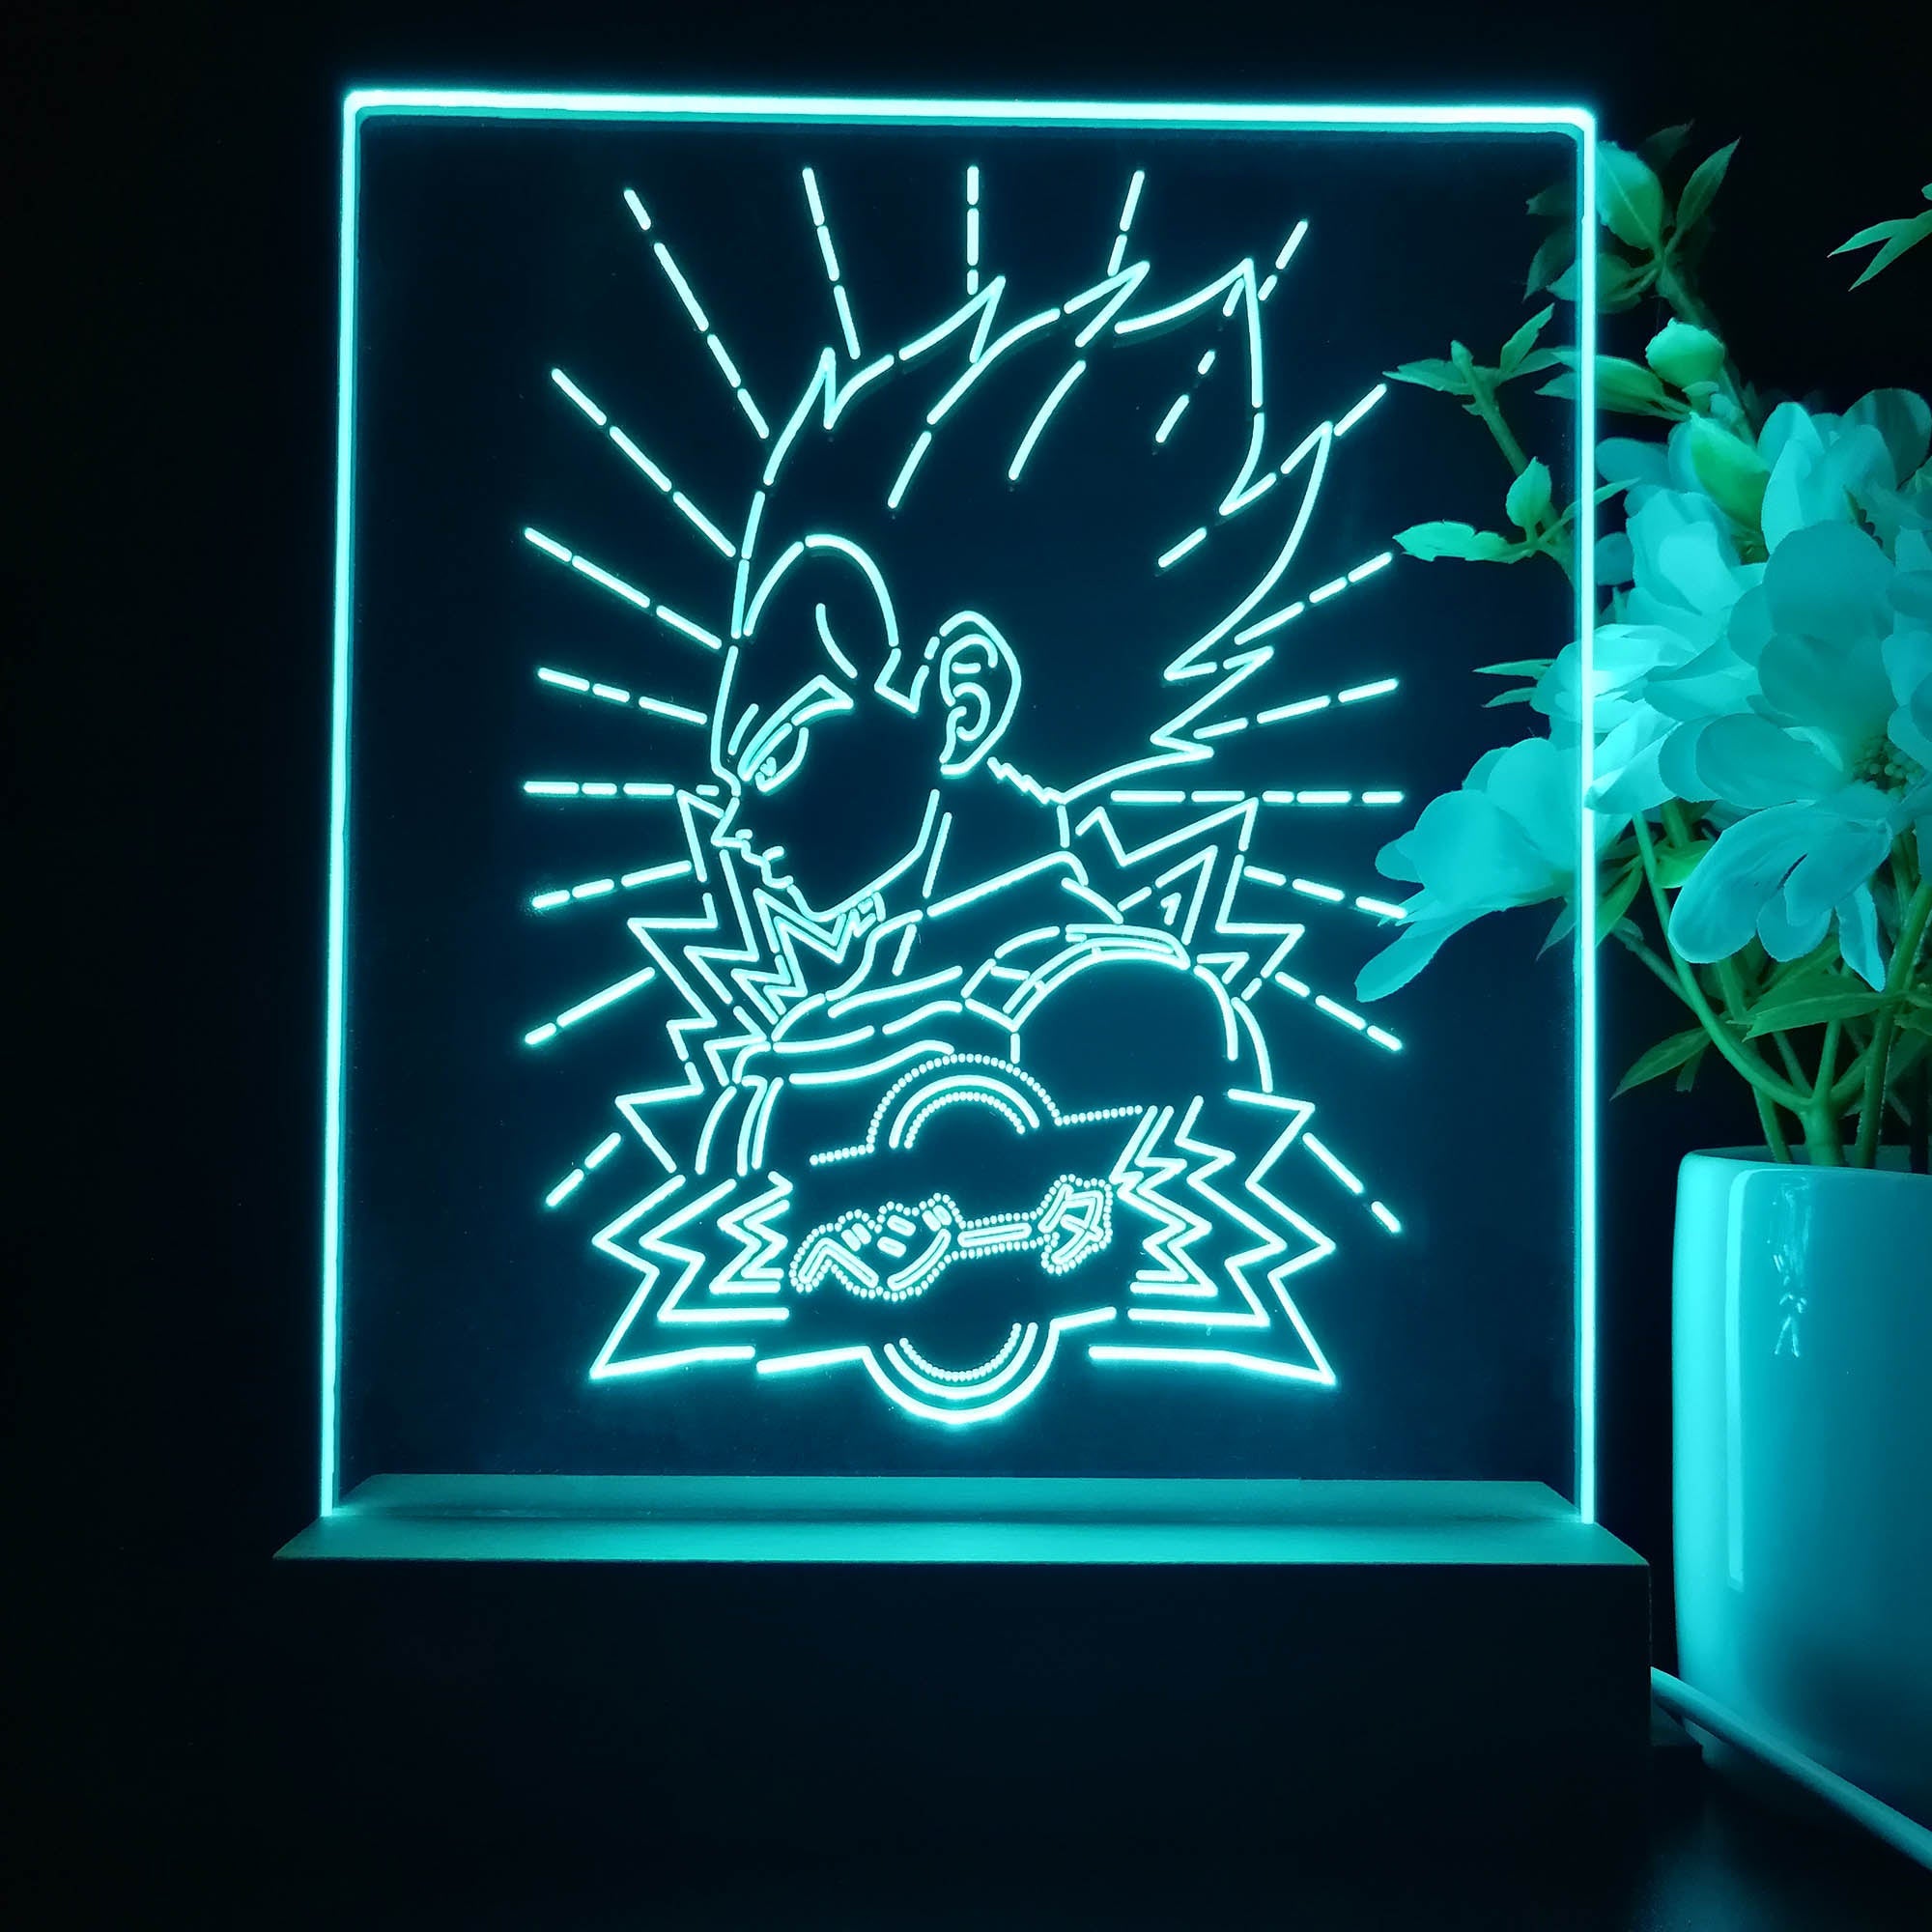 Dragon Ball Game Room LED Sign Lamp Display